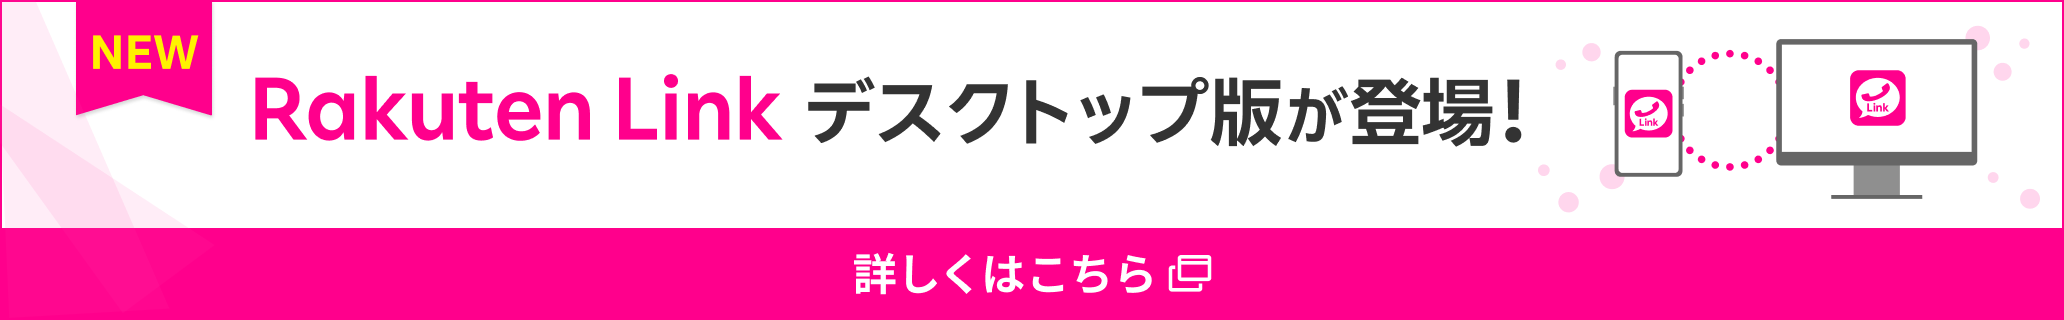 Rakuten Linkデスクトップ版が登場!